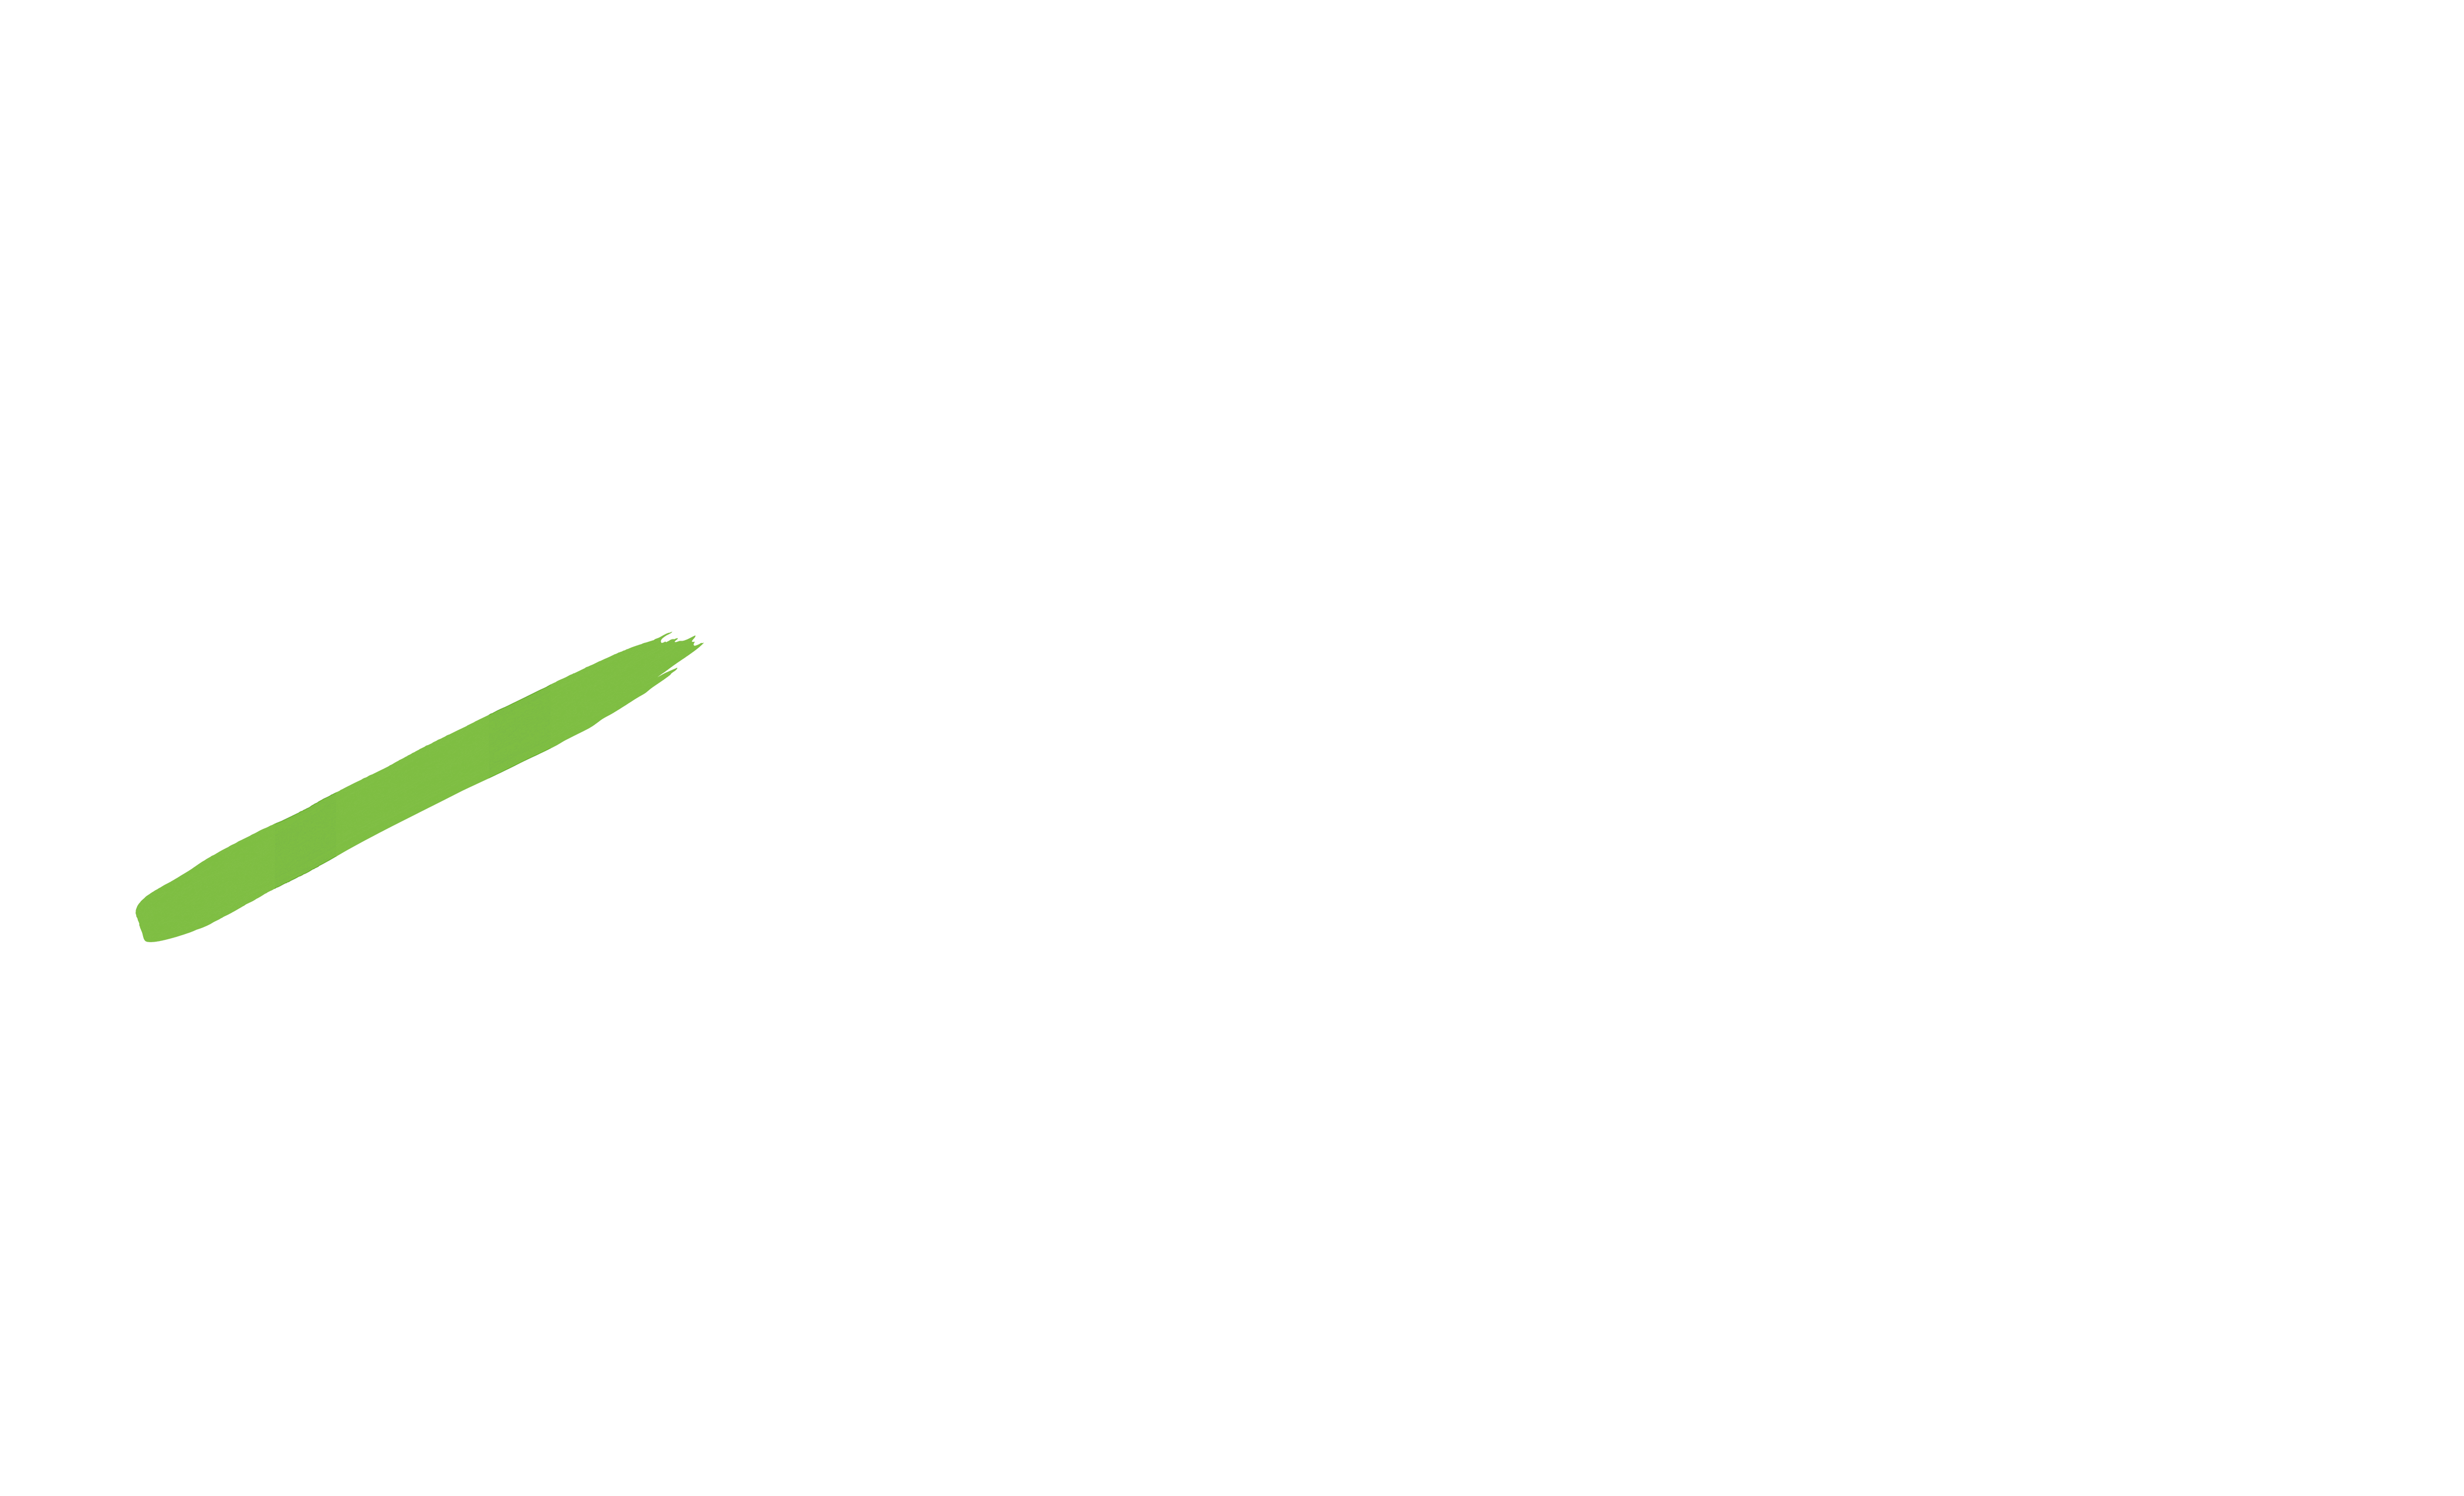 The Hauslands Bataan